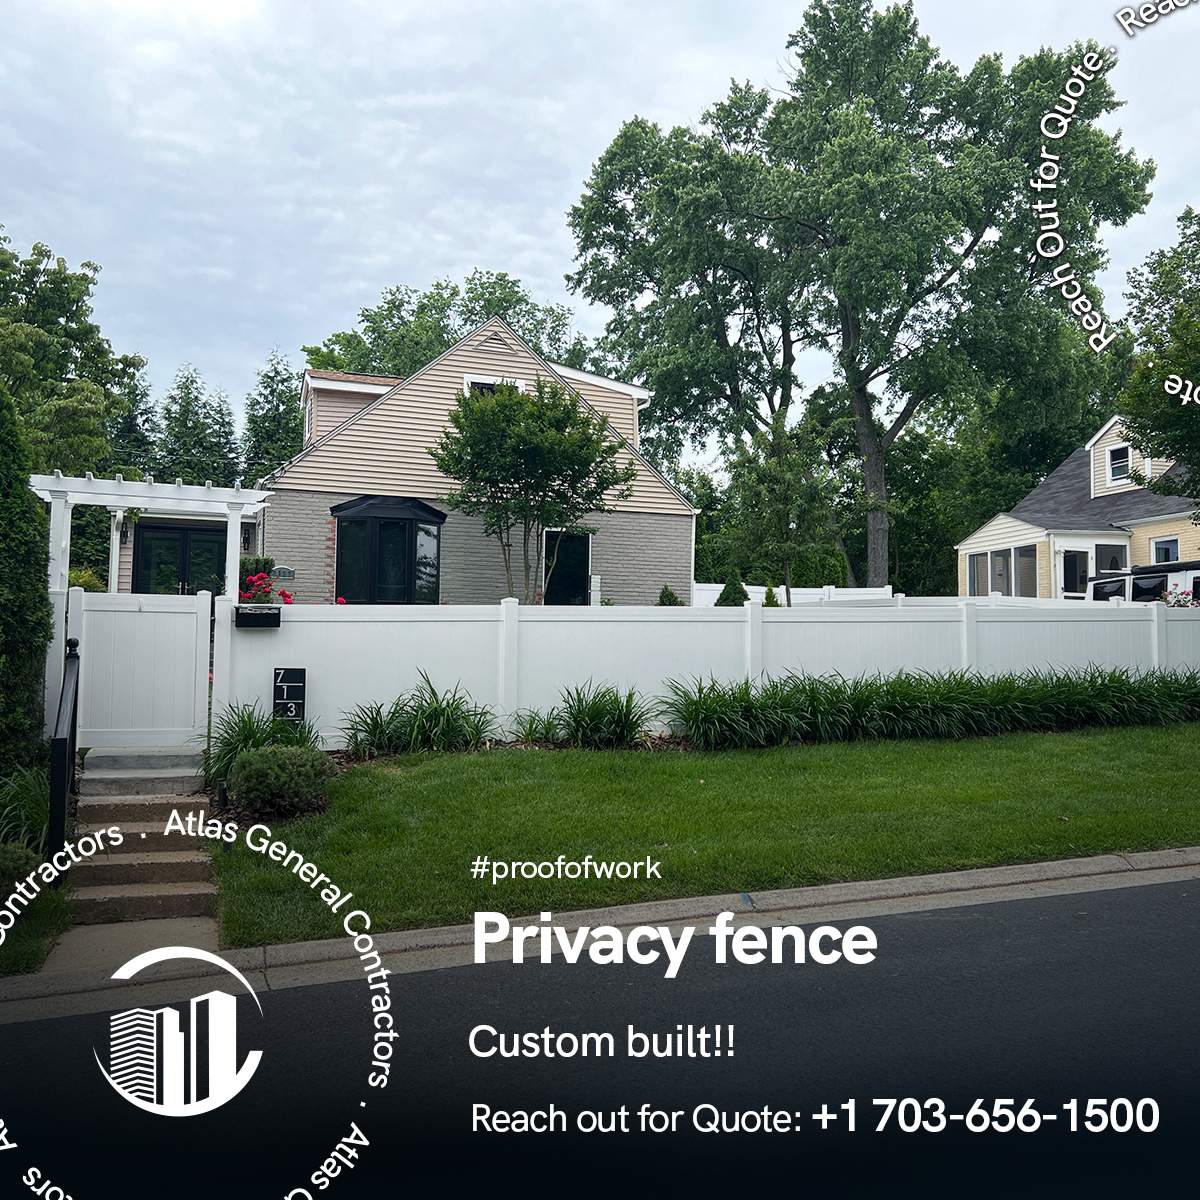 Privacy-fence-2.jpg